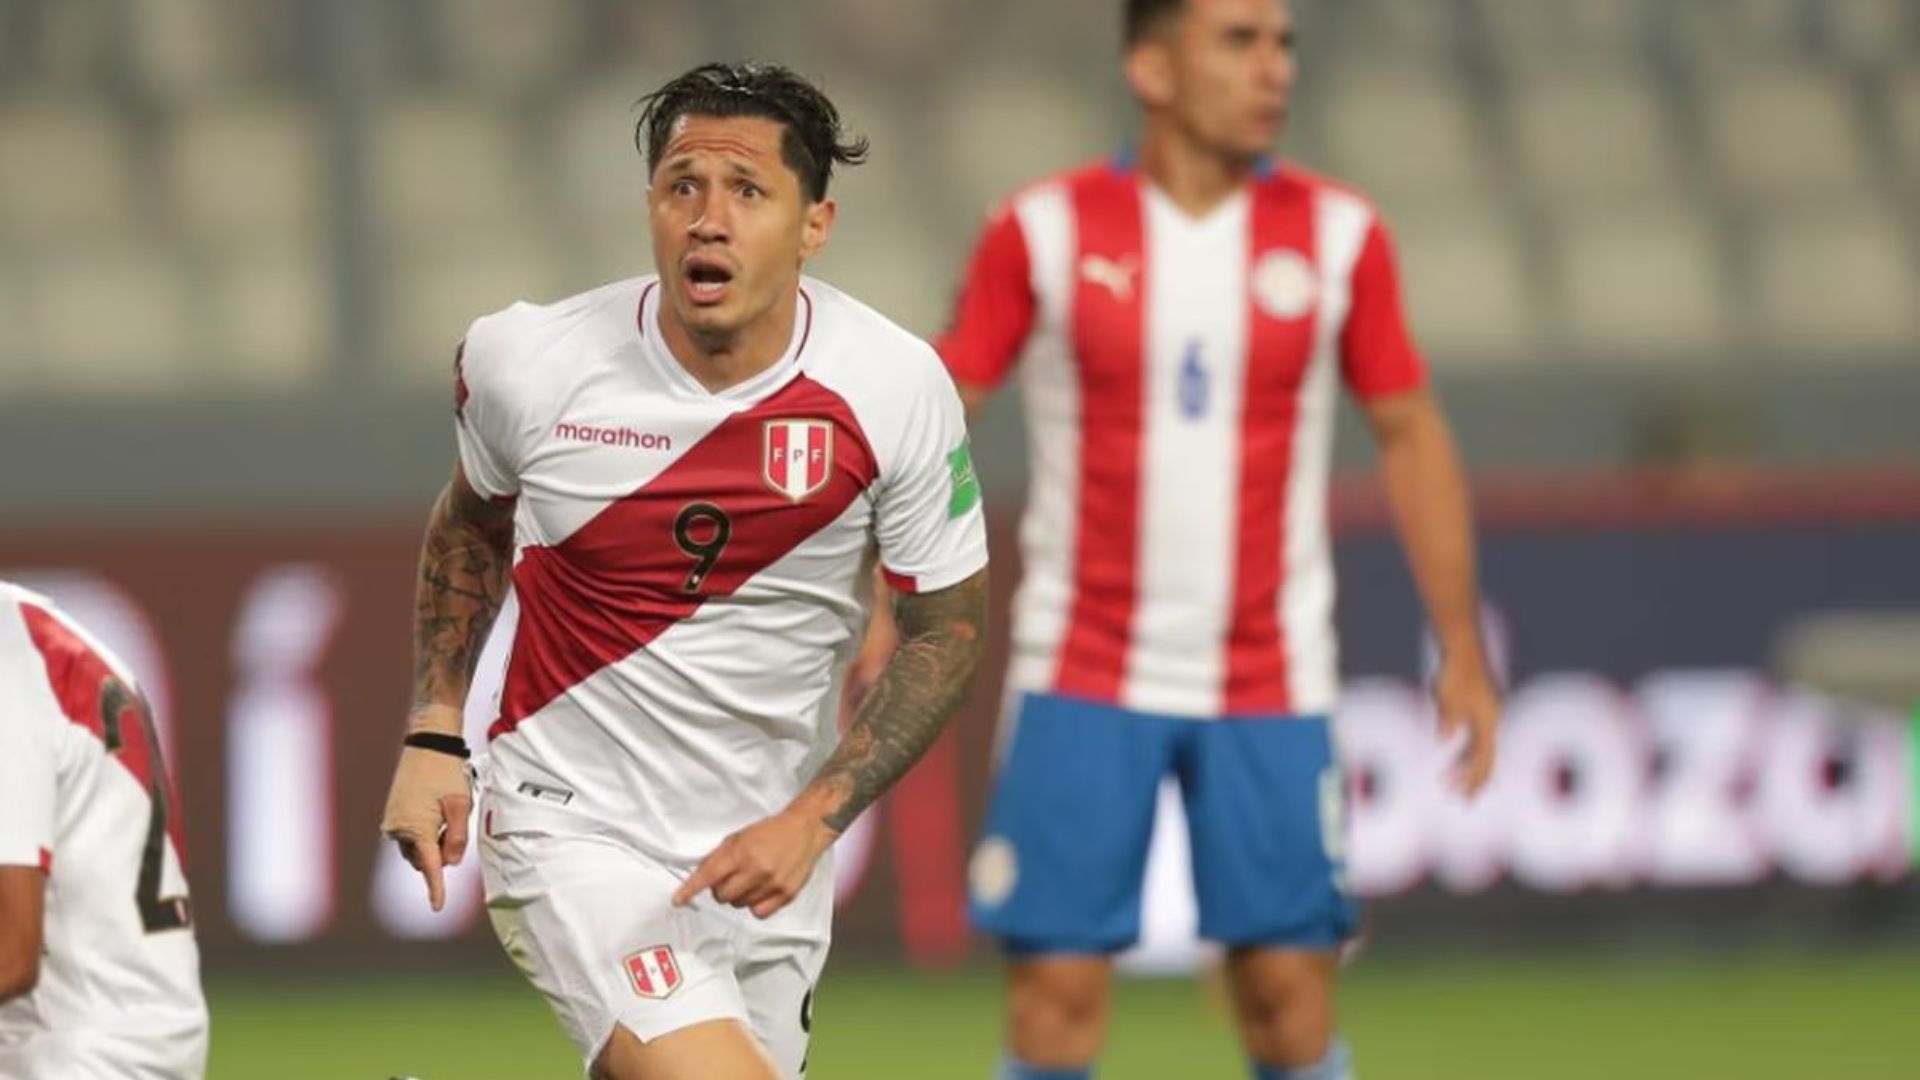 Selección peruana: América Tv, ATV y Movistar se unen para transmitir partidos de ‘bicolor’ de las Eliminatorias al Mundial 2026